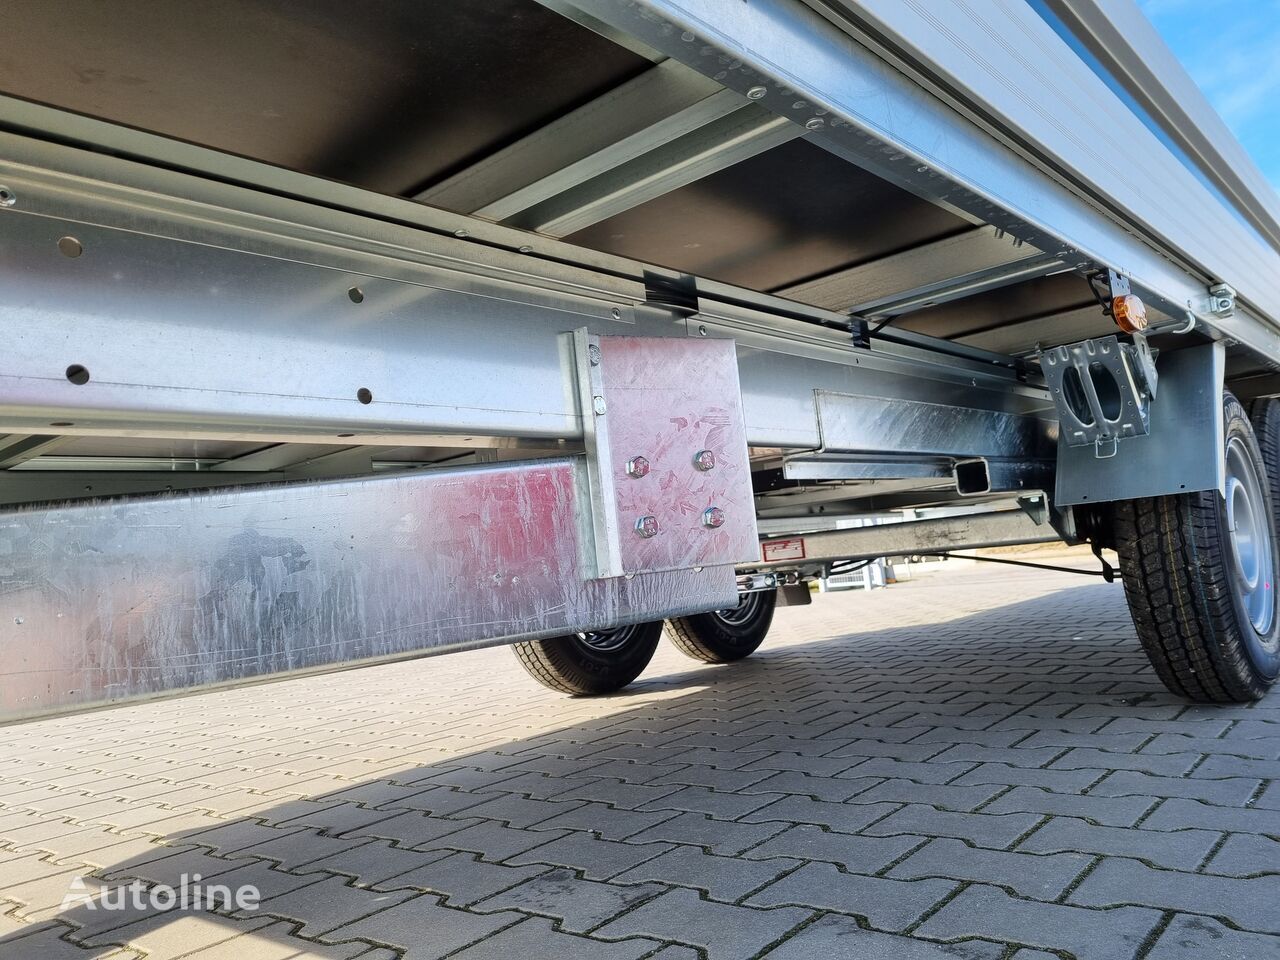 Uusi Lavaperävaunu Brenderup 5520 WATB 3,5T GVW 517x204 cm 5m long trailer platform: kuva Uusi Lavaperävaunu Brenderup 5520 WATB 3,5T GVW 517x204 cm 5m long trailer platform